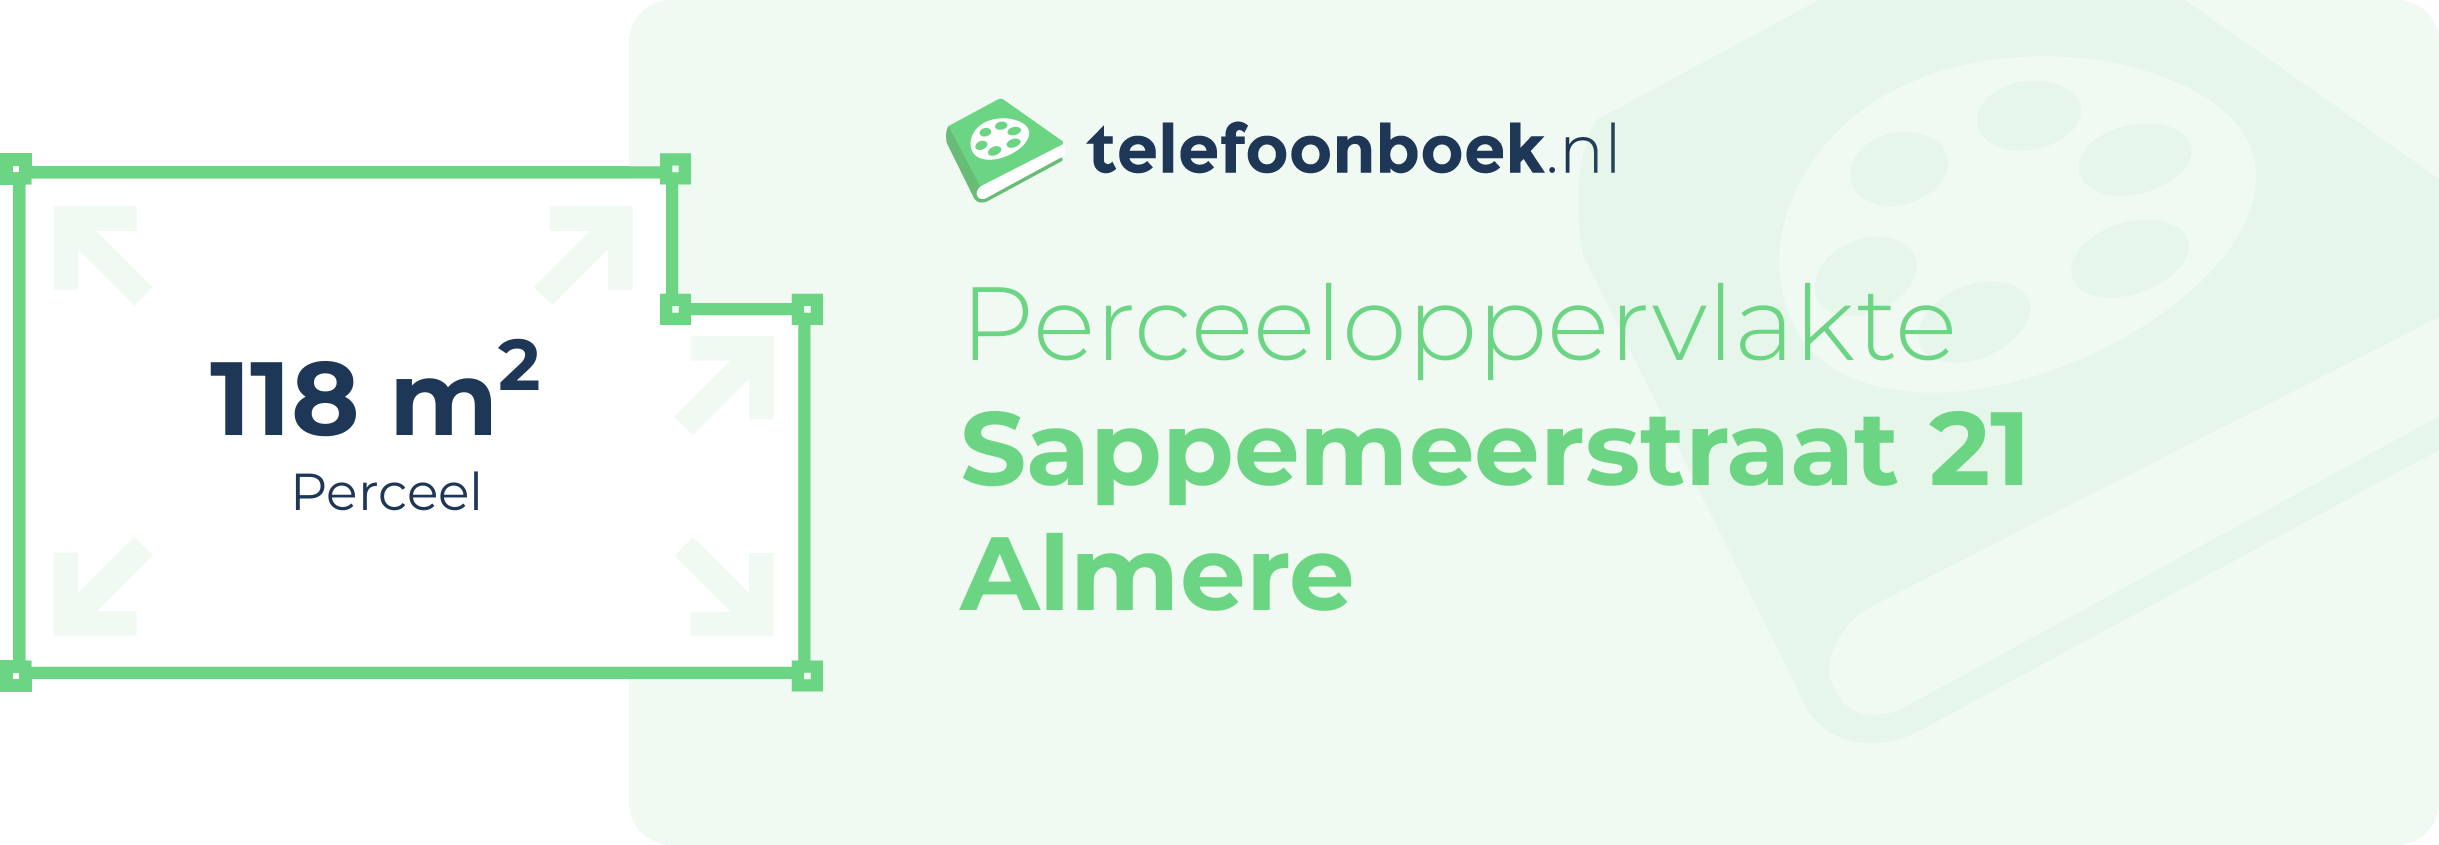 Perceeloppervlakte Sappemeerstraat 21 Almere